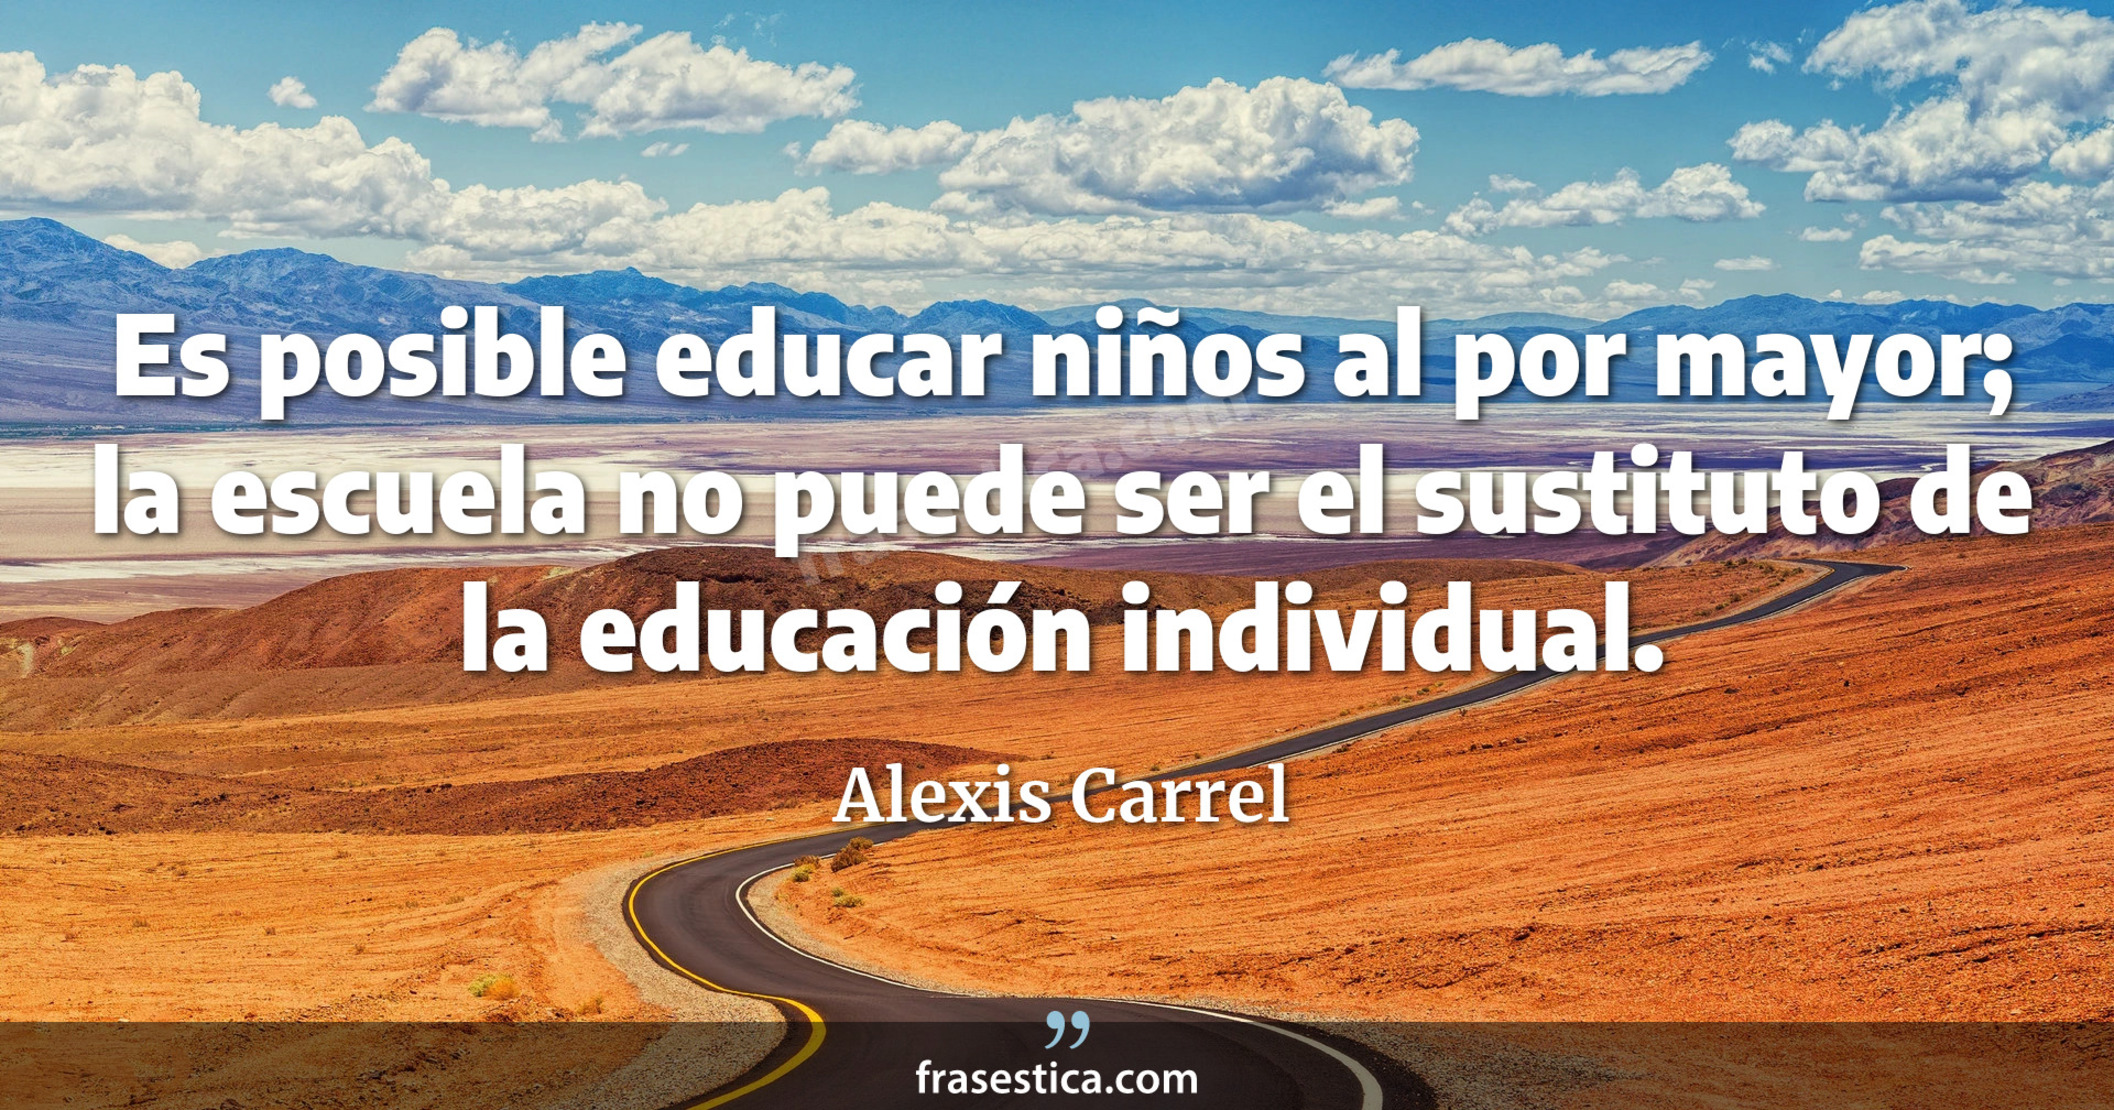 Es posible educar niños al por mayor; la escuela no puede ser el sustituto de la educación individual. - Alexis Carrel